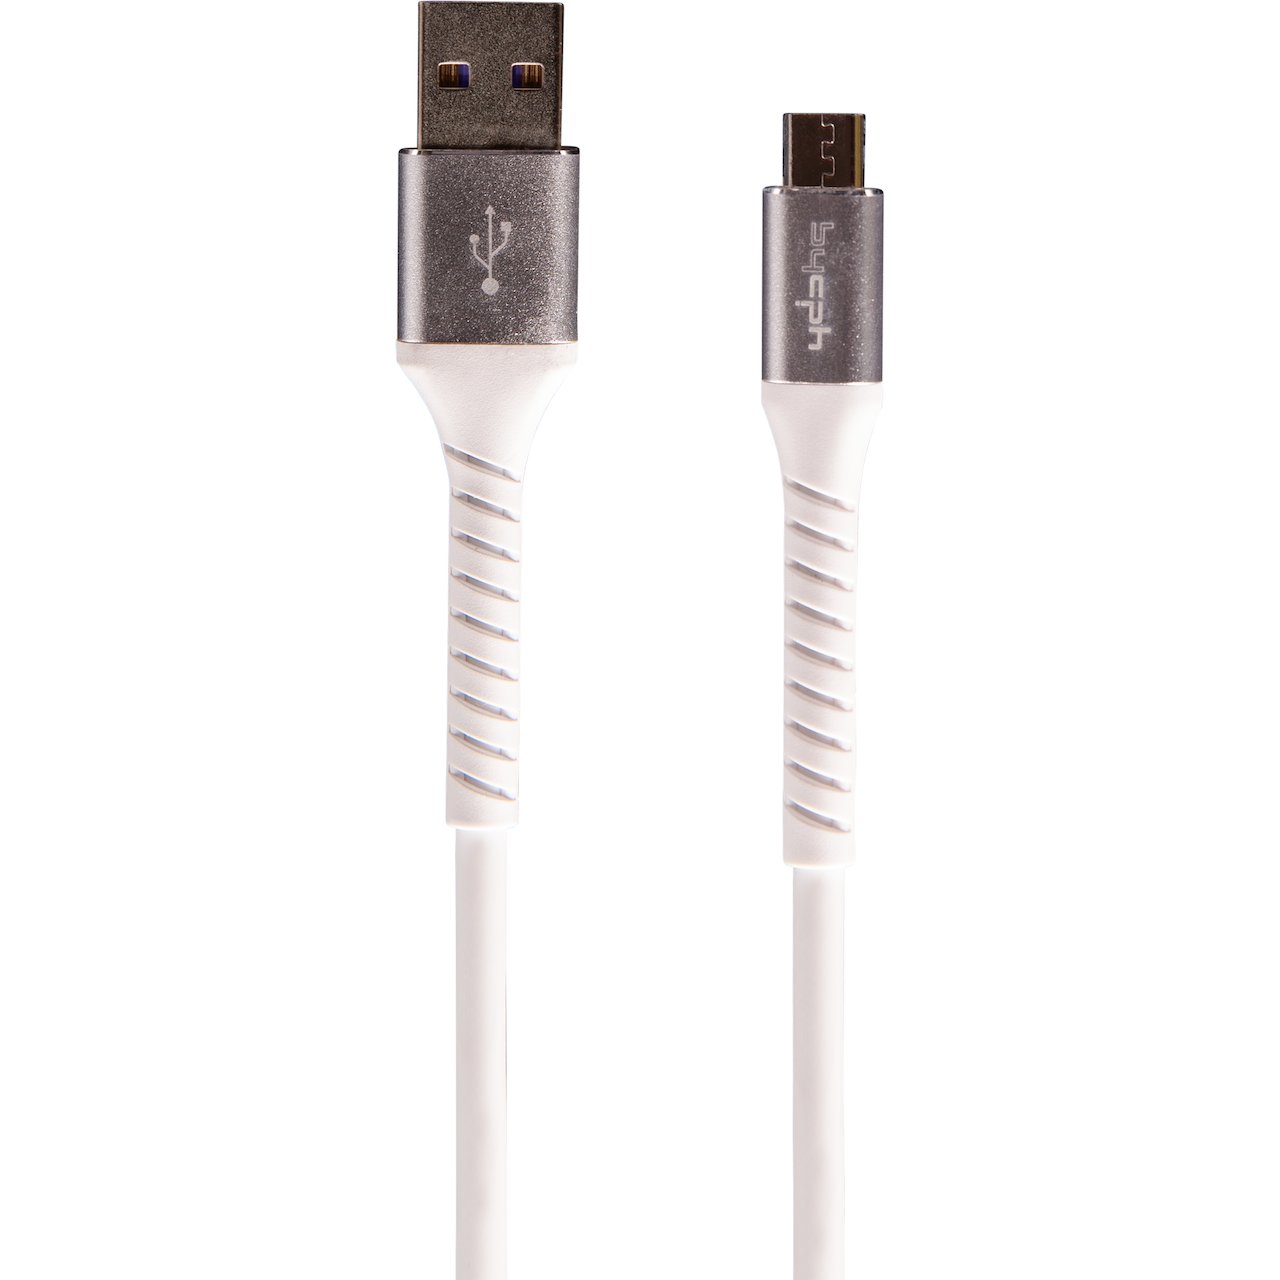 LEKI BYCPH PRO CABLE USB TIL MICRO USB 1.0 M